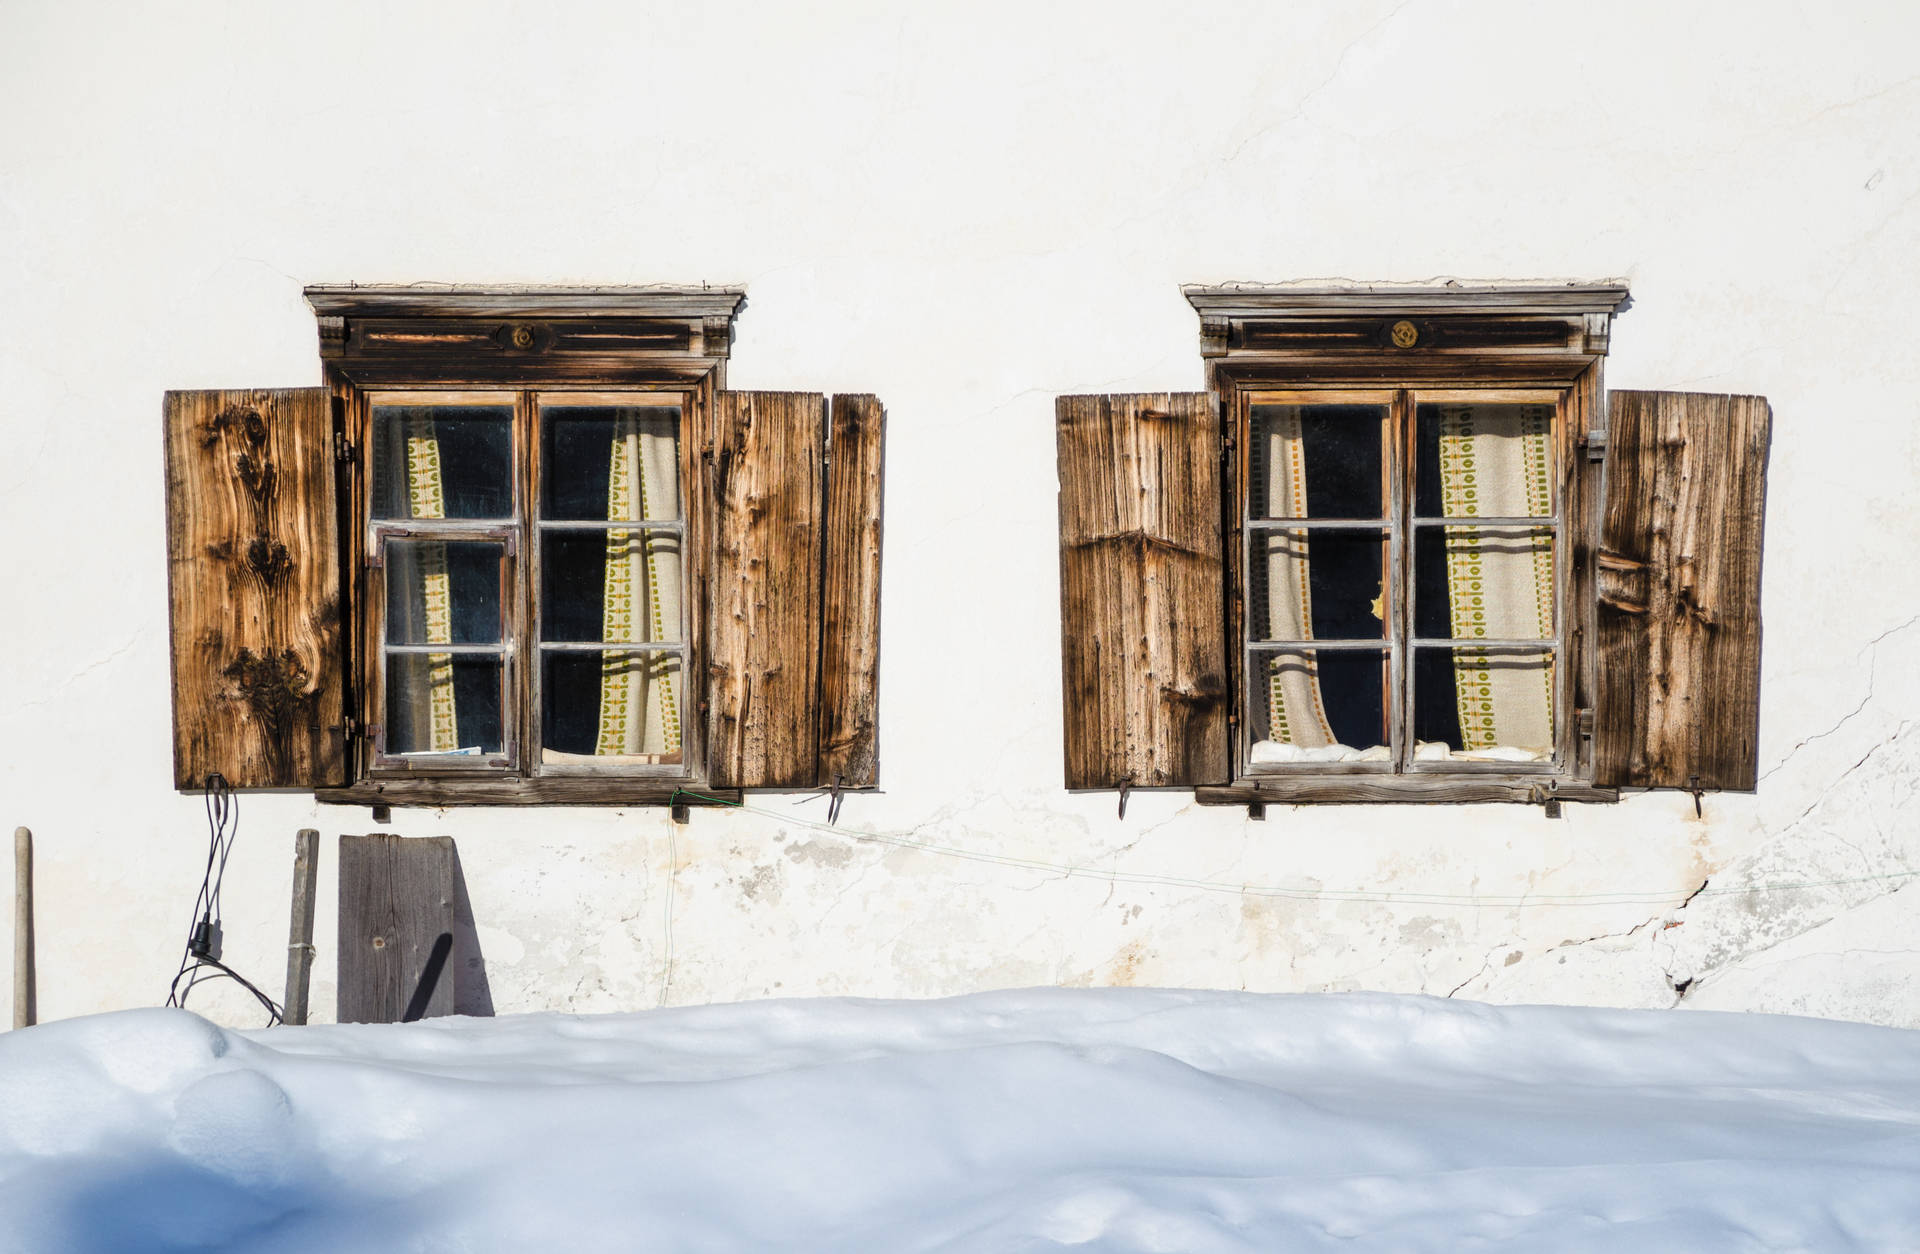 Wooden Windows Winter Background